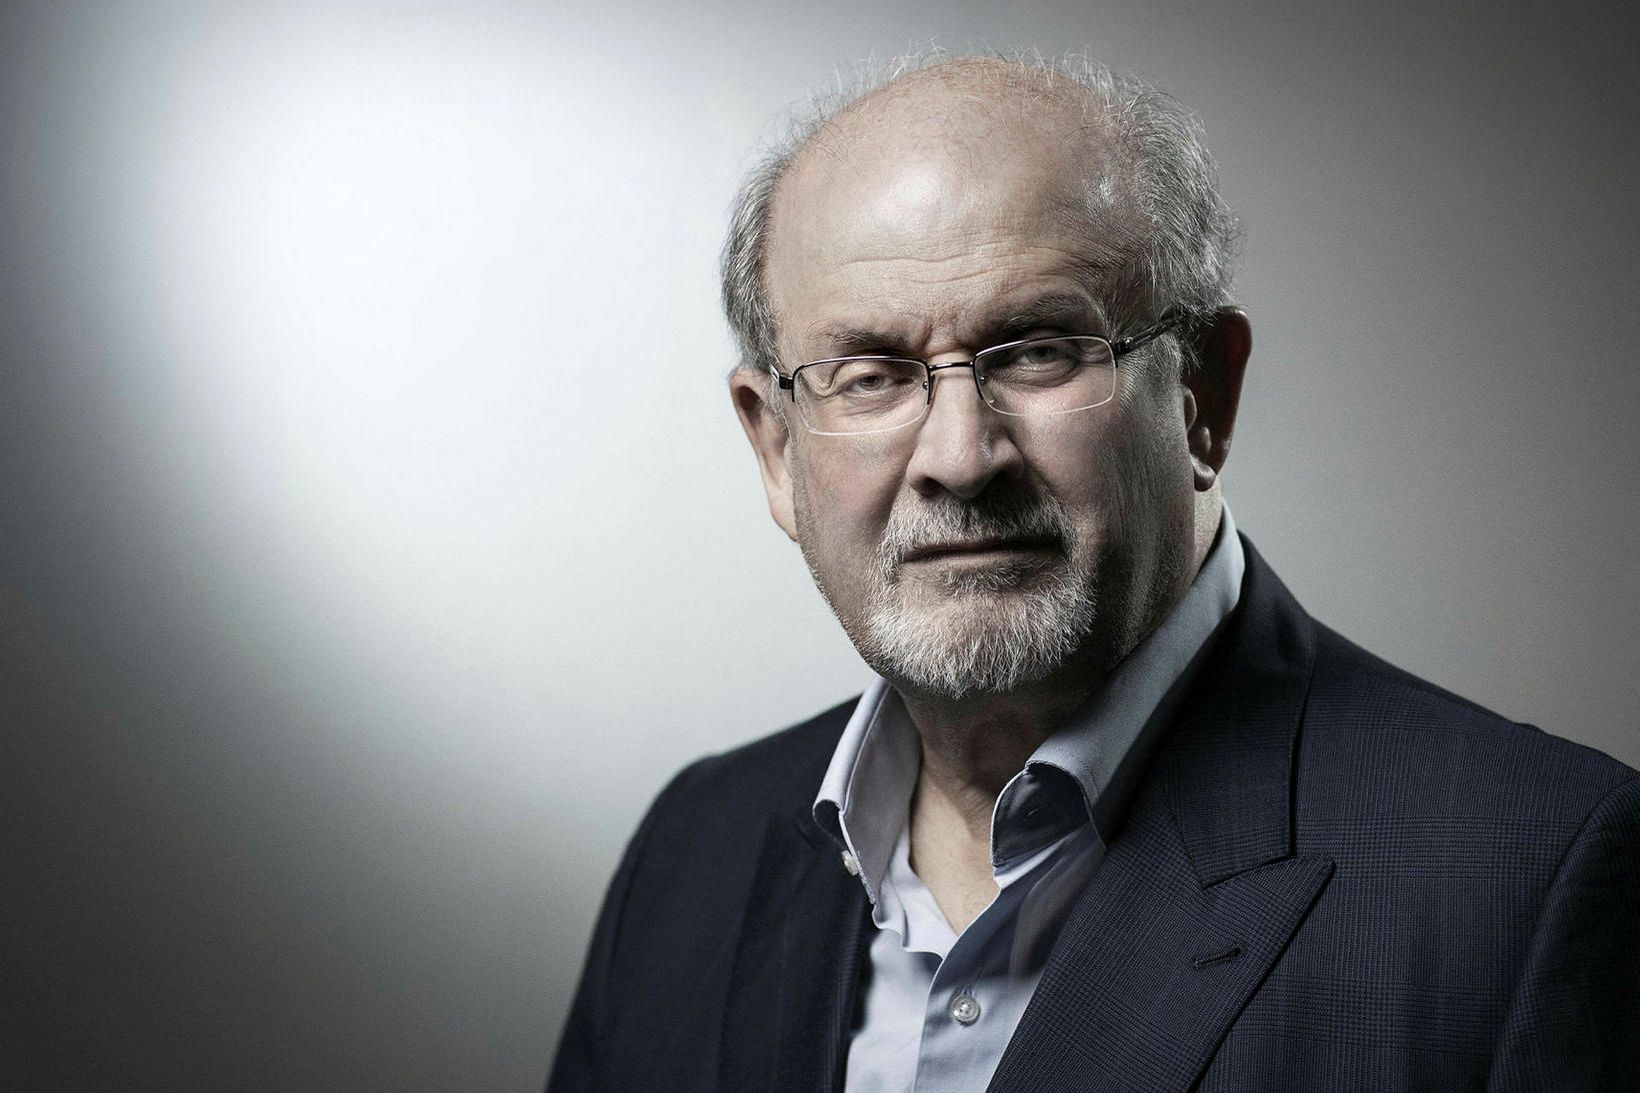 Rushdie segist setjast niður til að skrifa, en úr því …